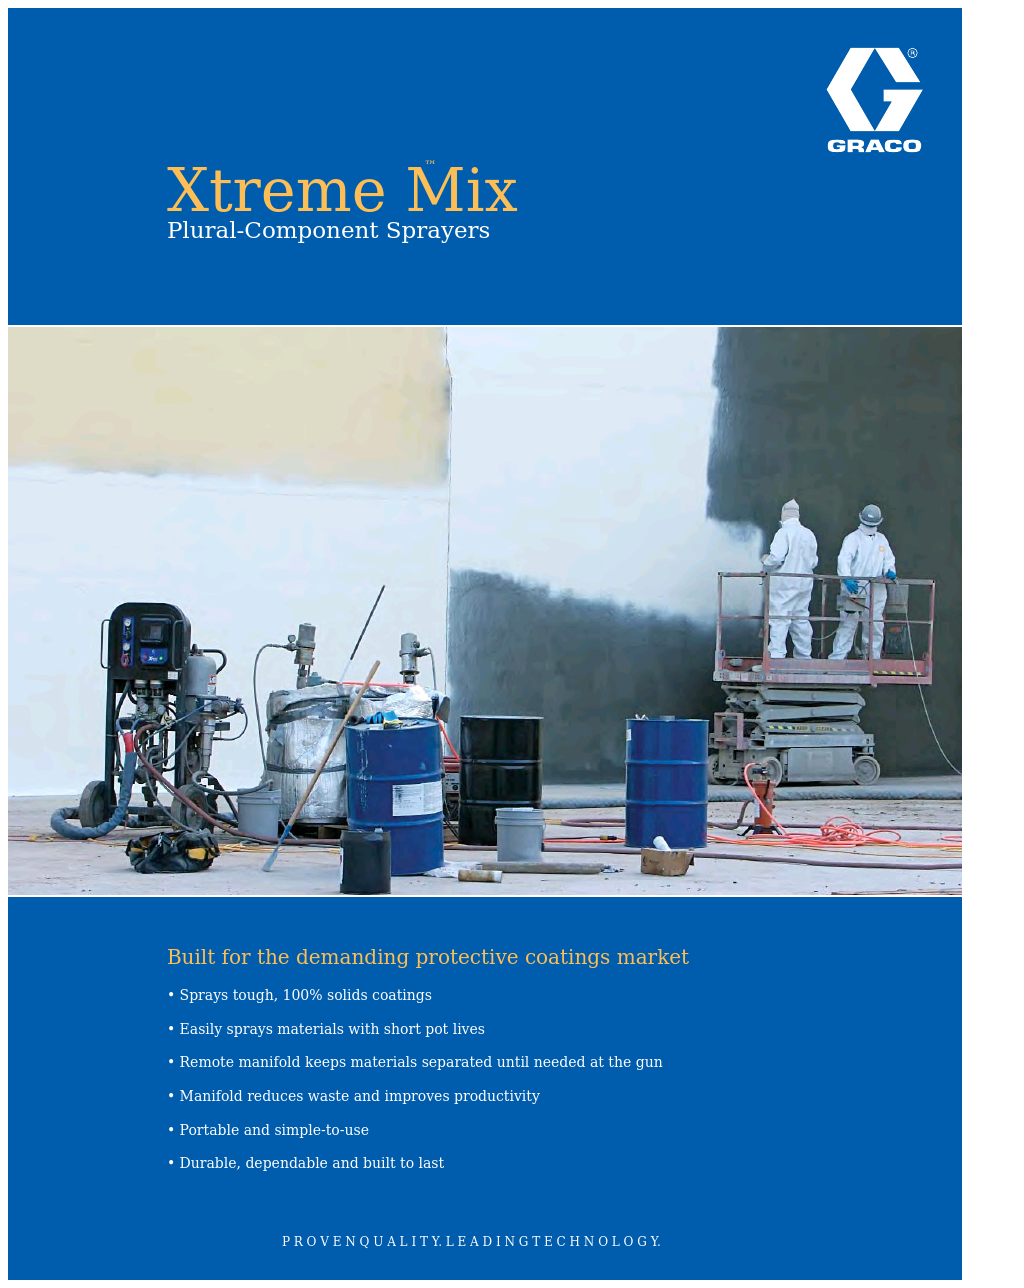 Xtreme Mix XTR702